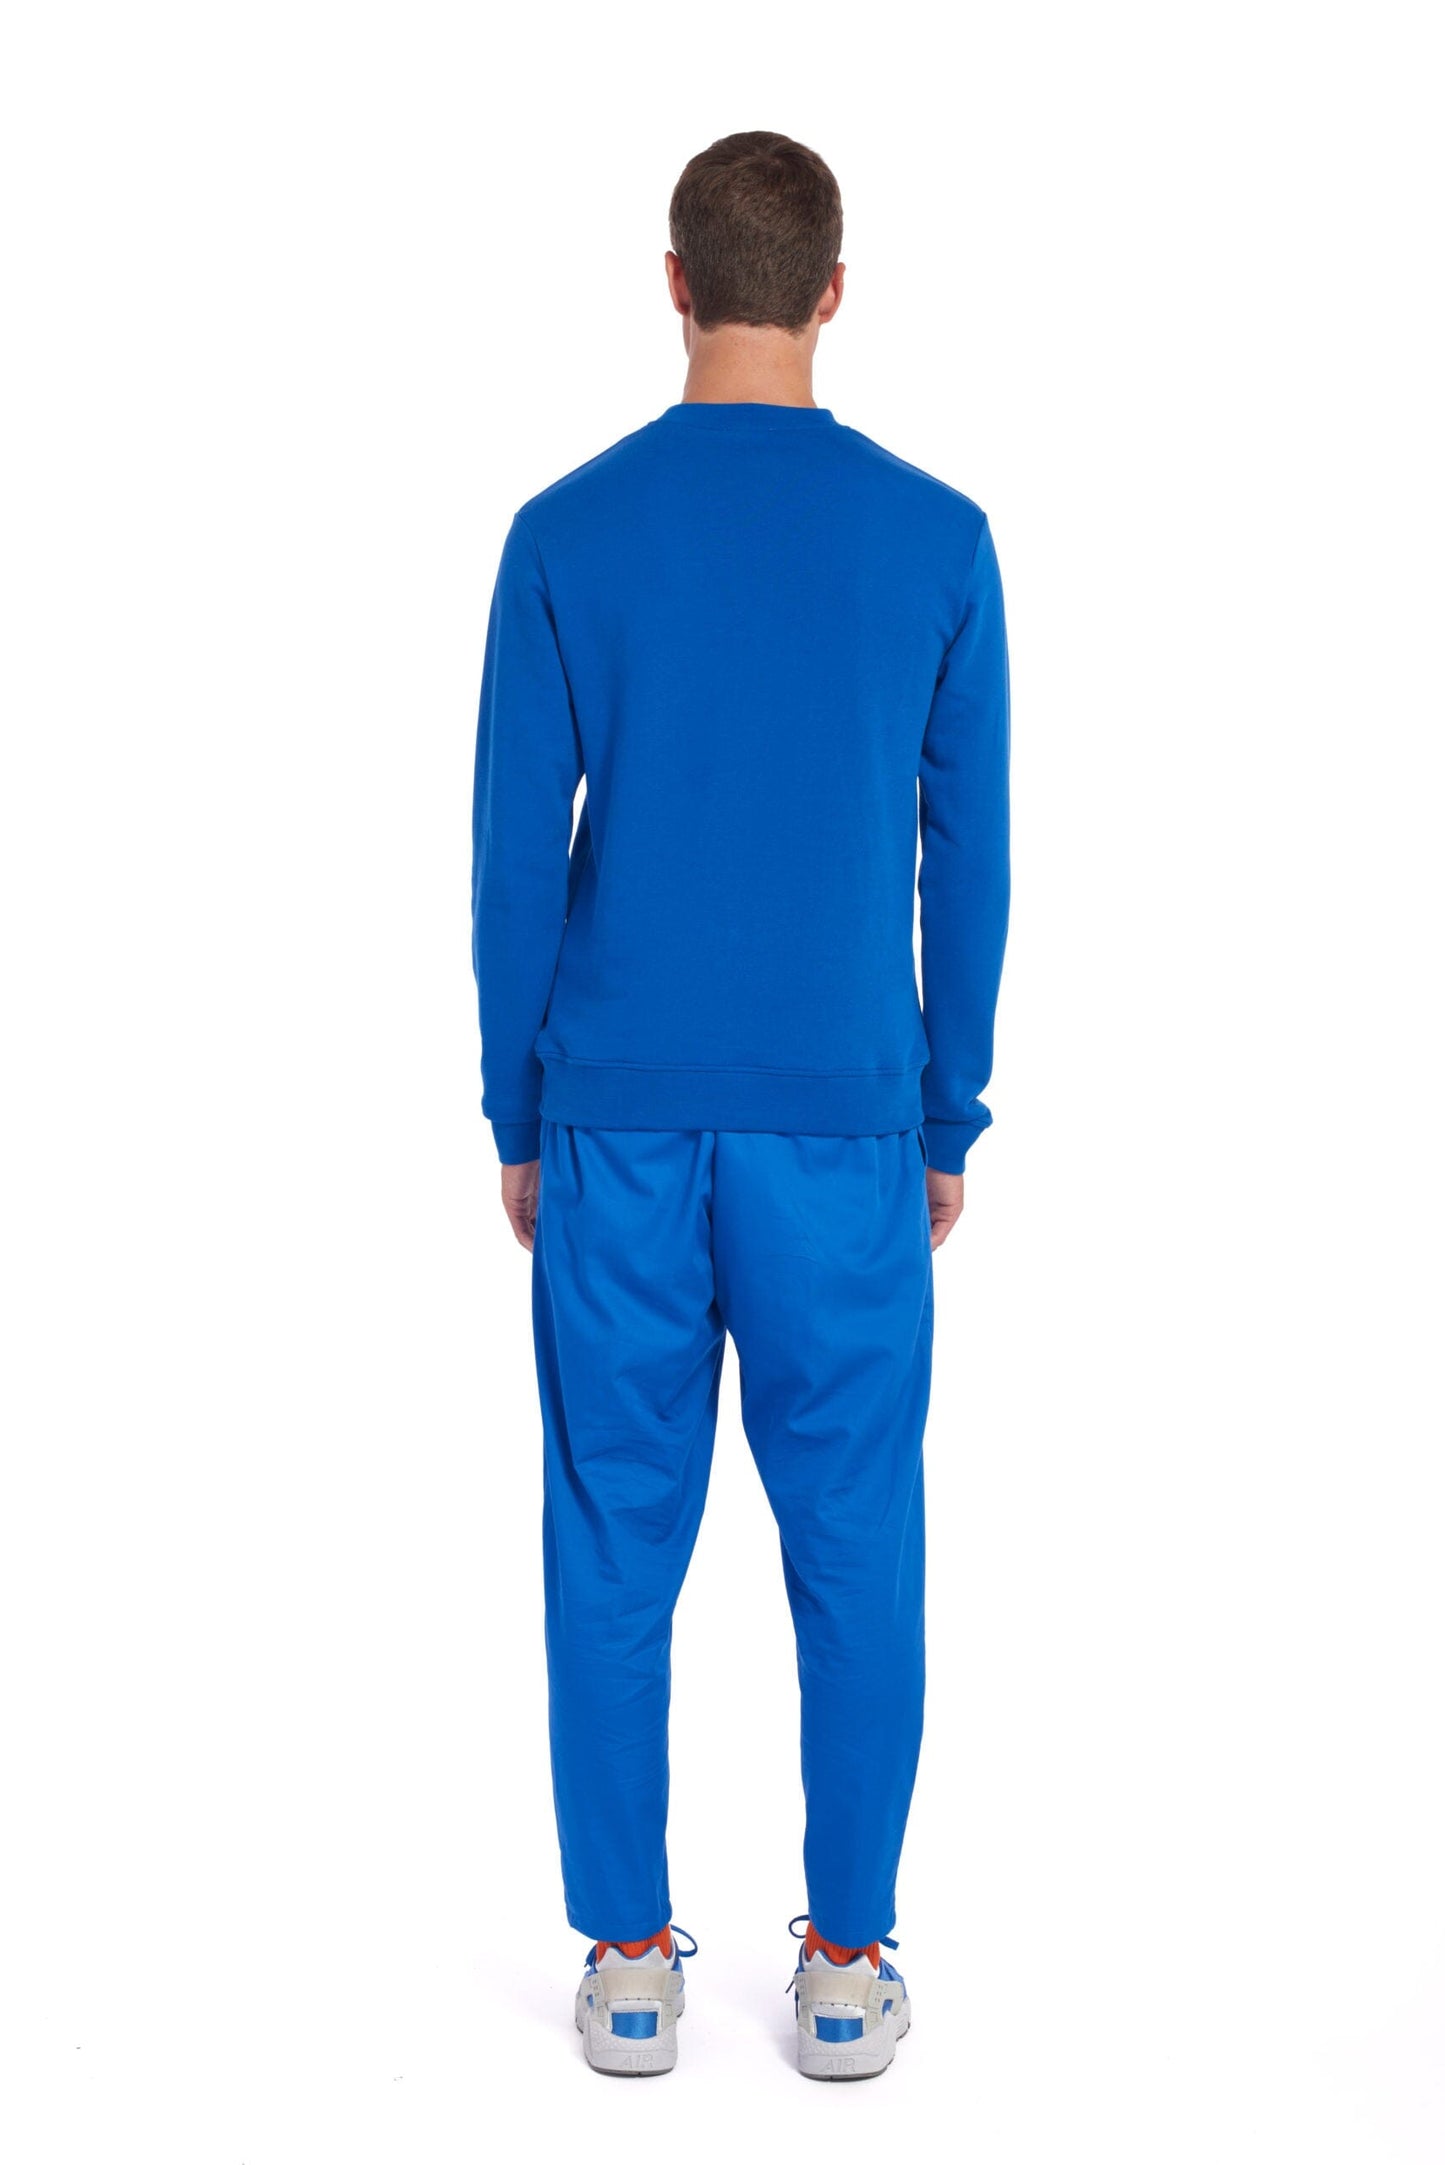 Fakir - Blue Sweater LaurenceAirline 